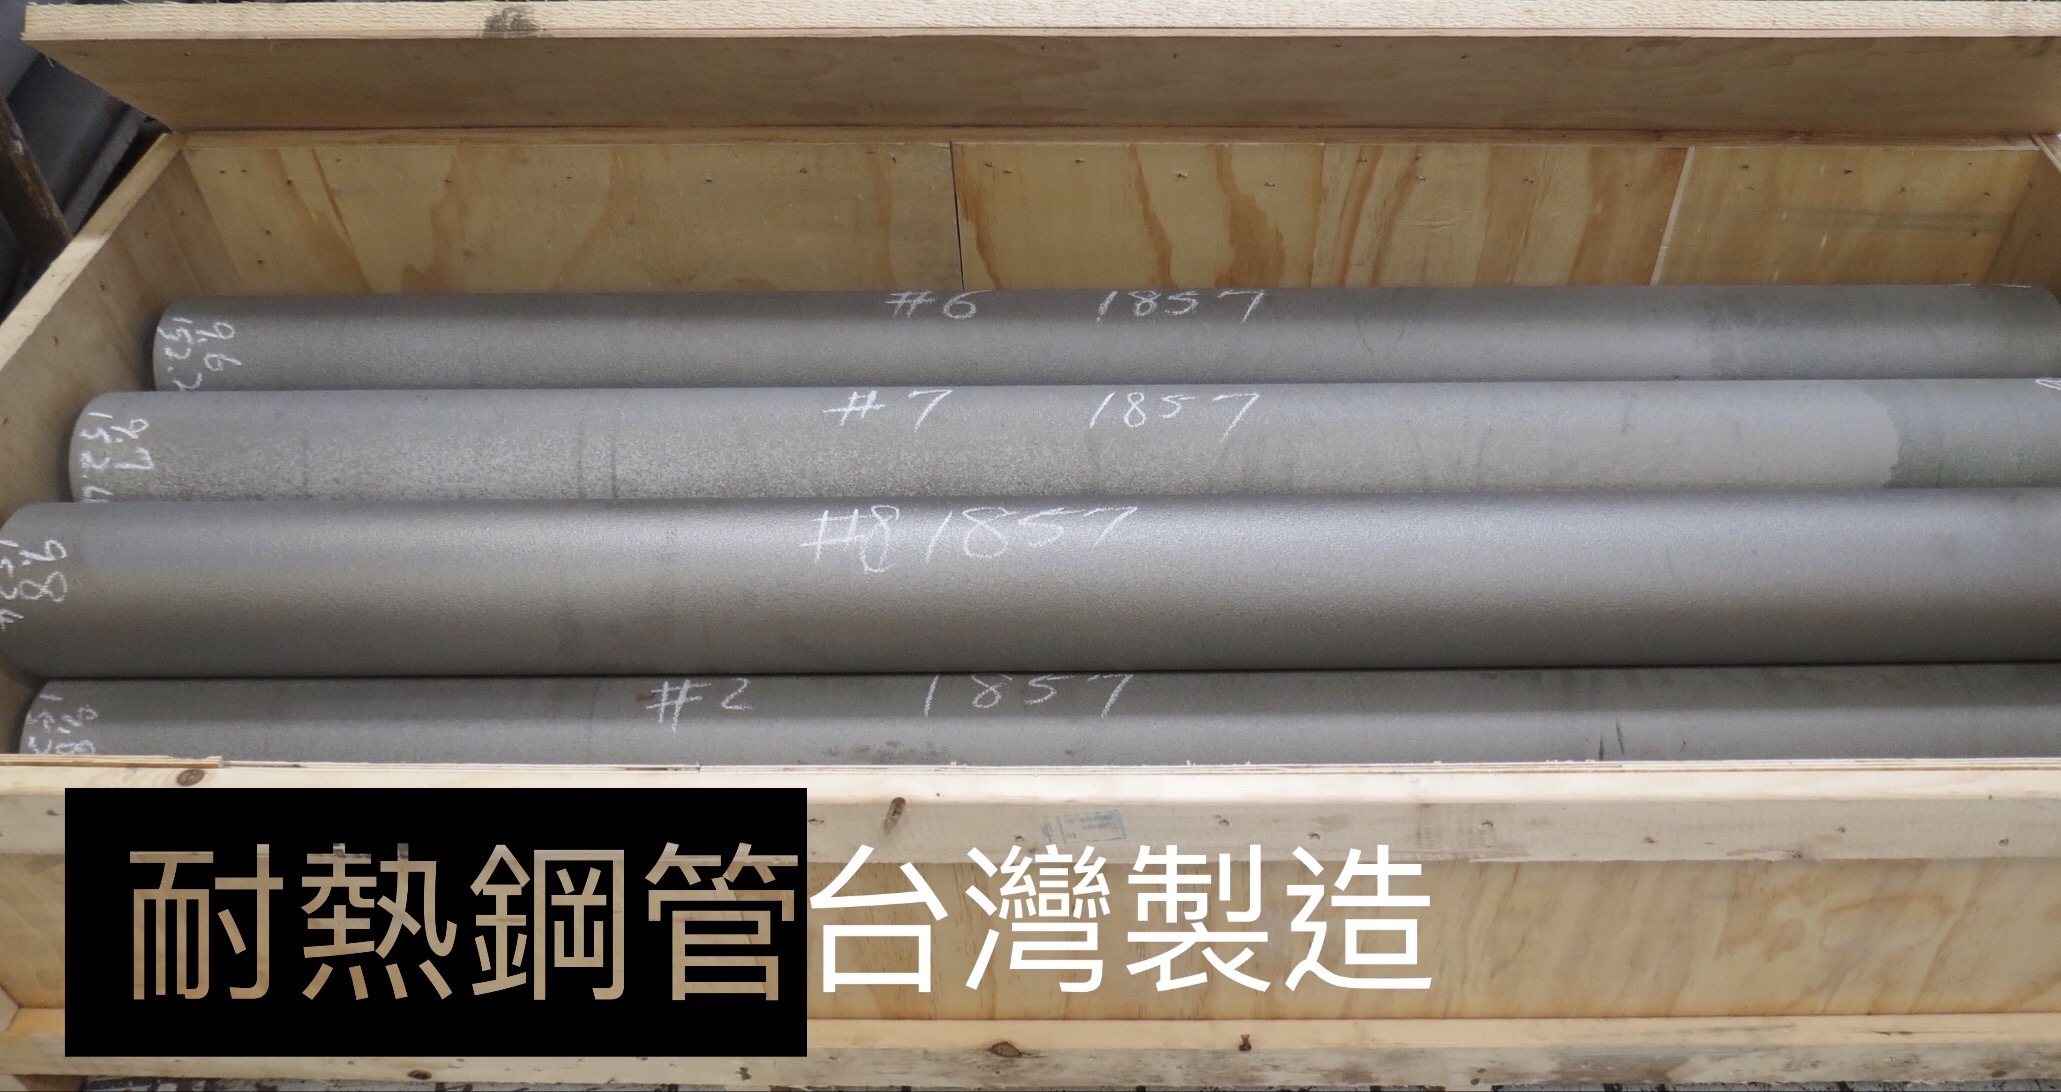 龍吉宇精密股份有限公司的離心鑄造耐熱鋼管為不繡鋼管的ㄧ種